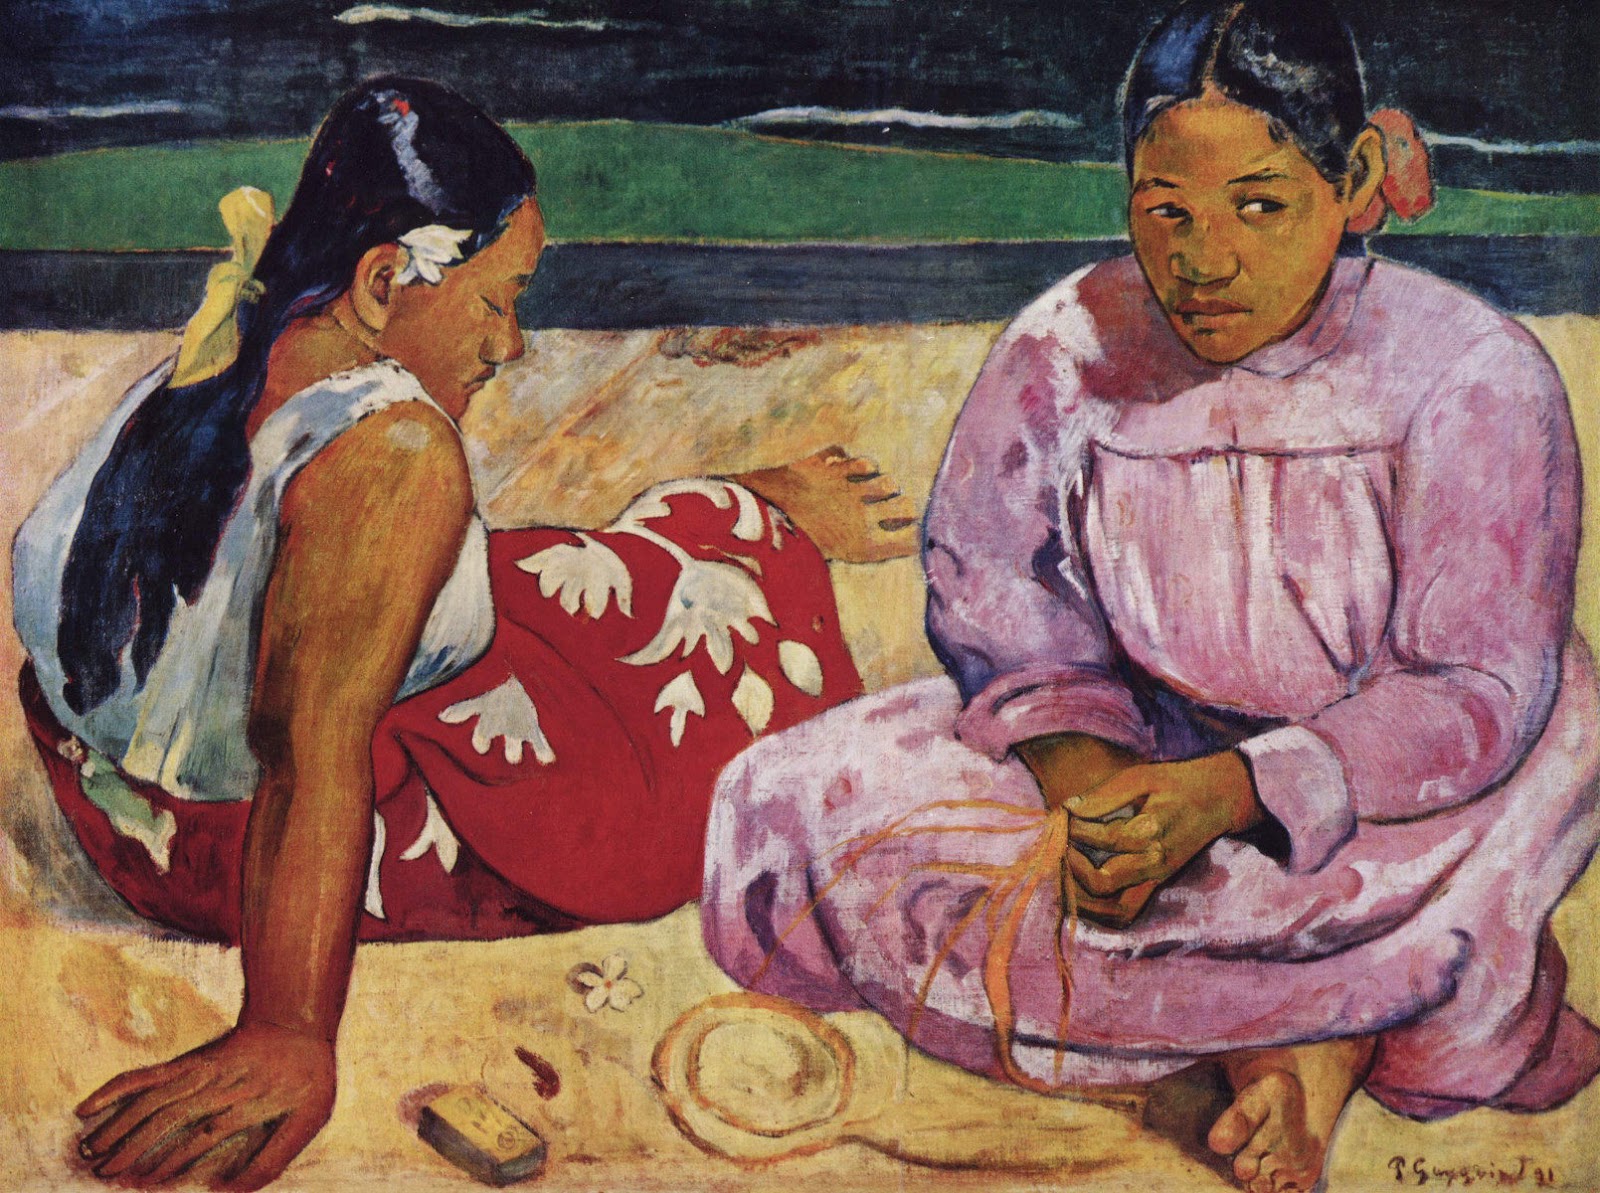 Paul+Gauguin-1848-1903 (461).jpg